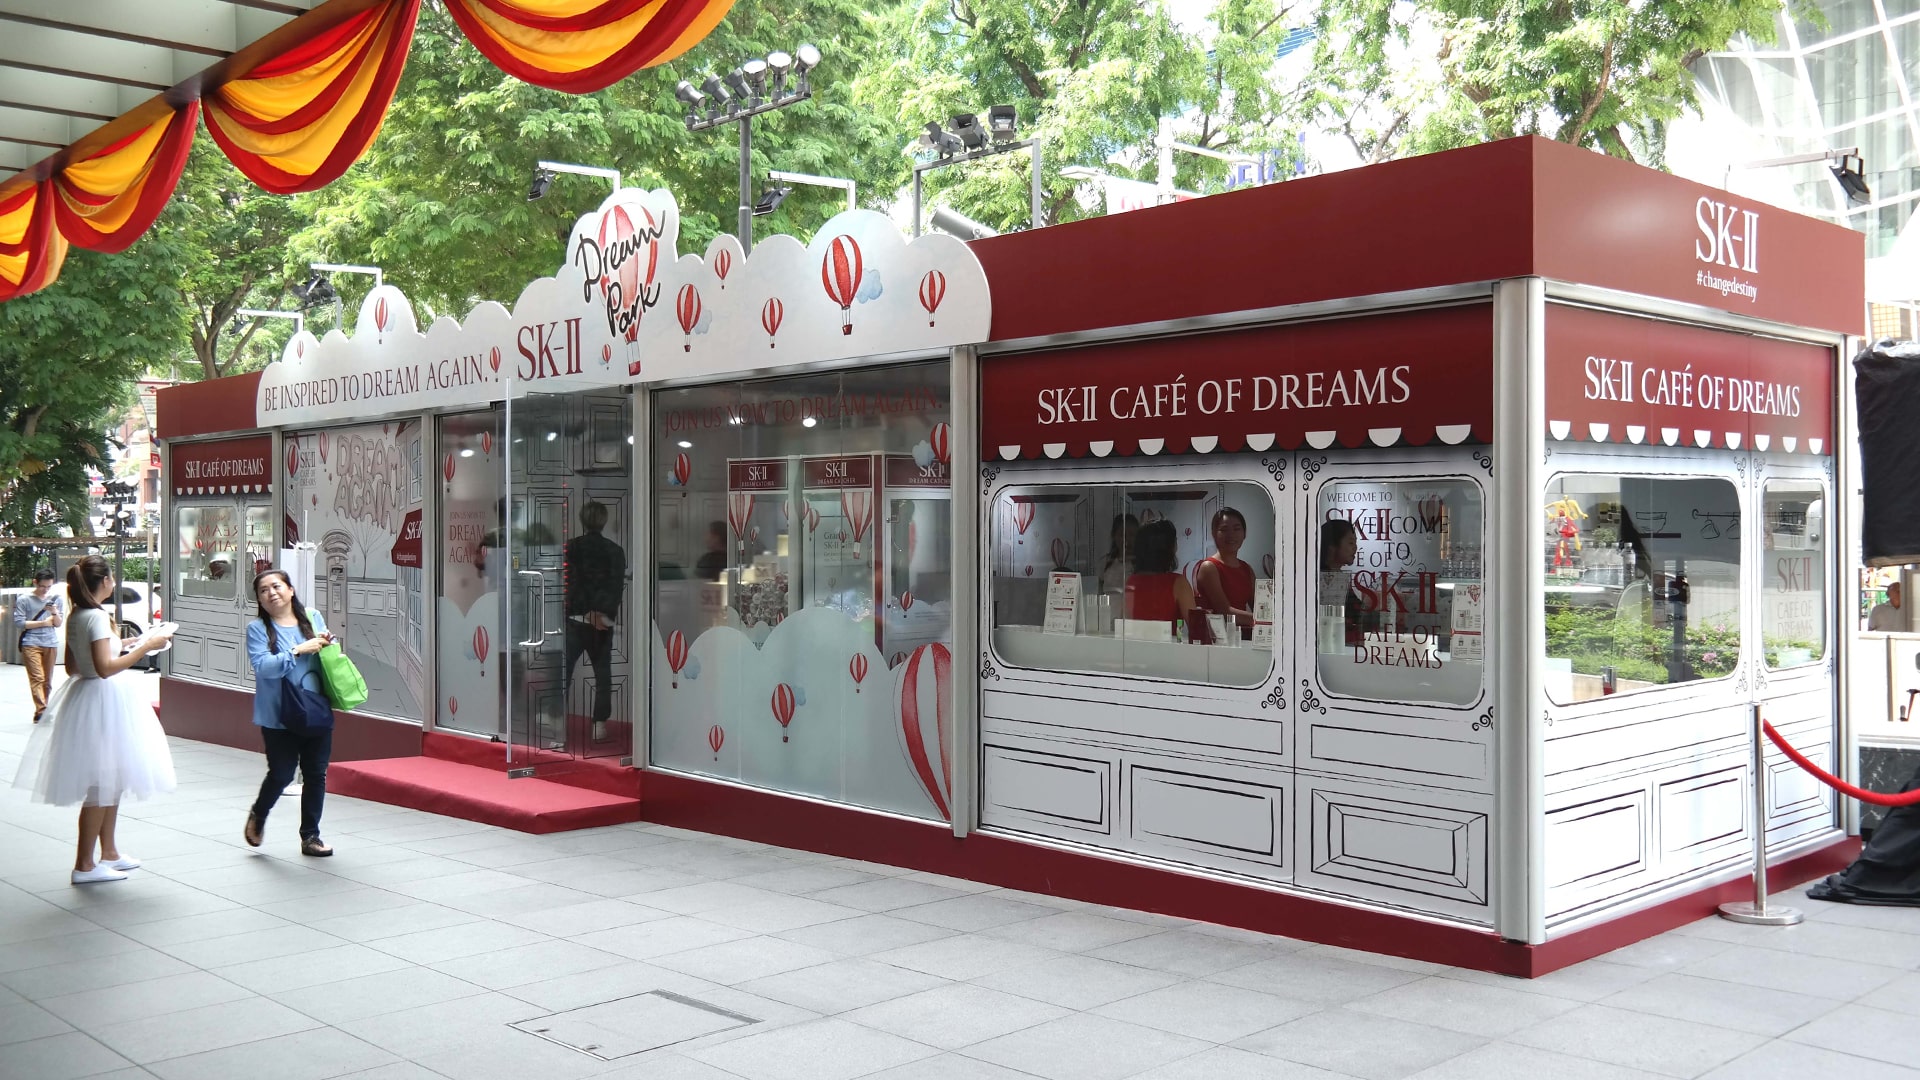 tsc_tubelar_exhibits_pop-up-stores_sk2-cafe-of-dreams-03_1920x1080-min